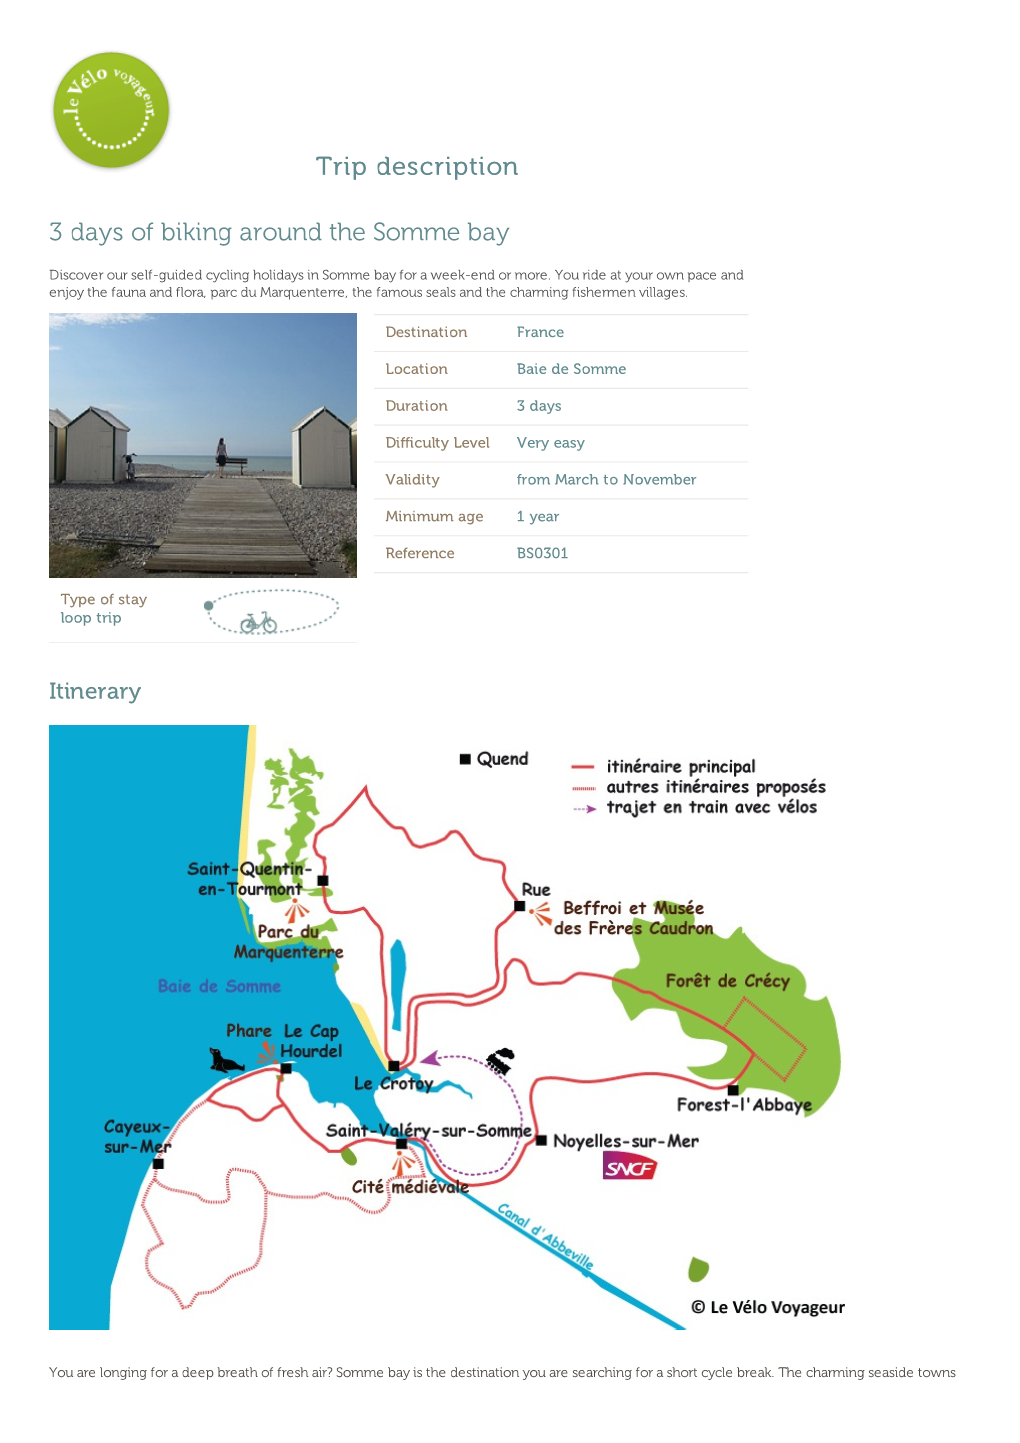 Trip Description 3 Days of Biking Around the Somme